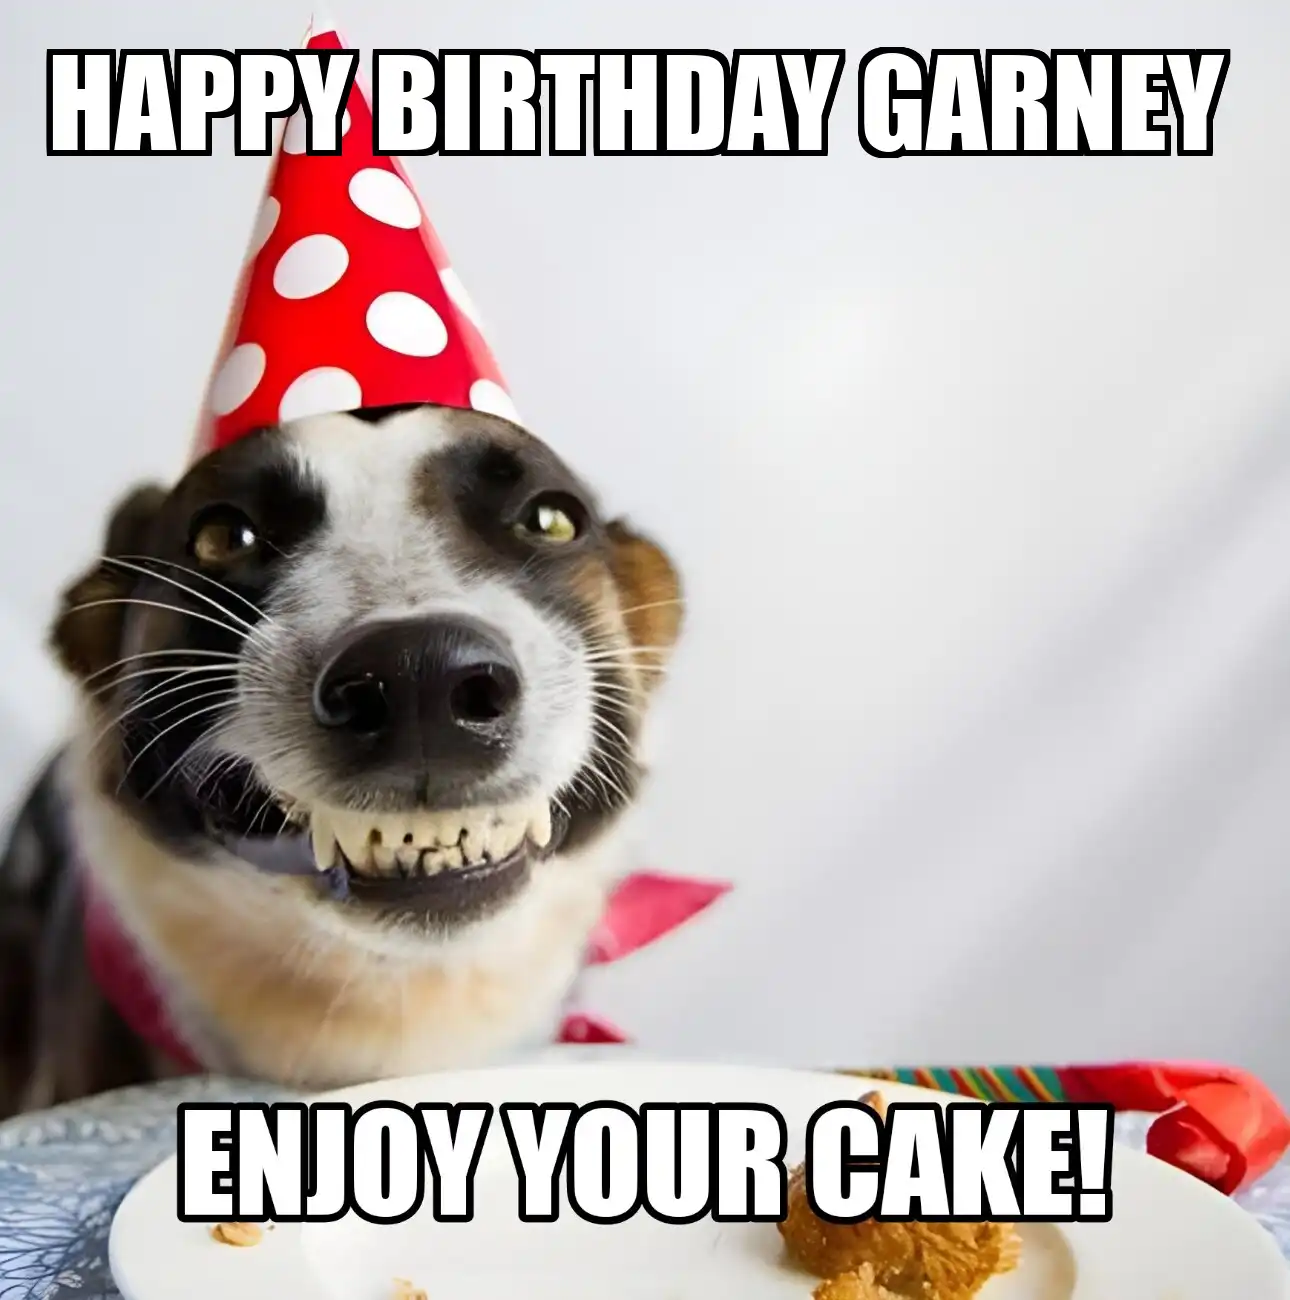 Happy Birthday Garney Enjoy Your Cake Dog Meme